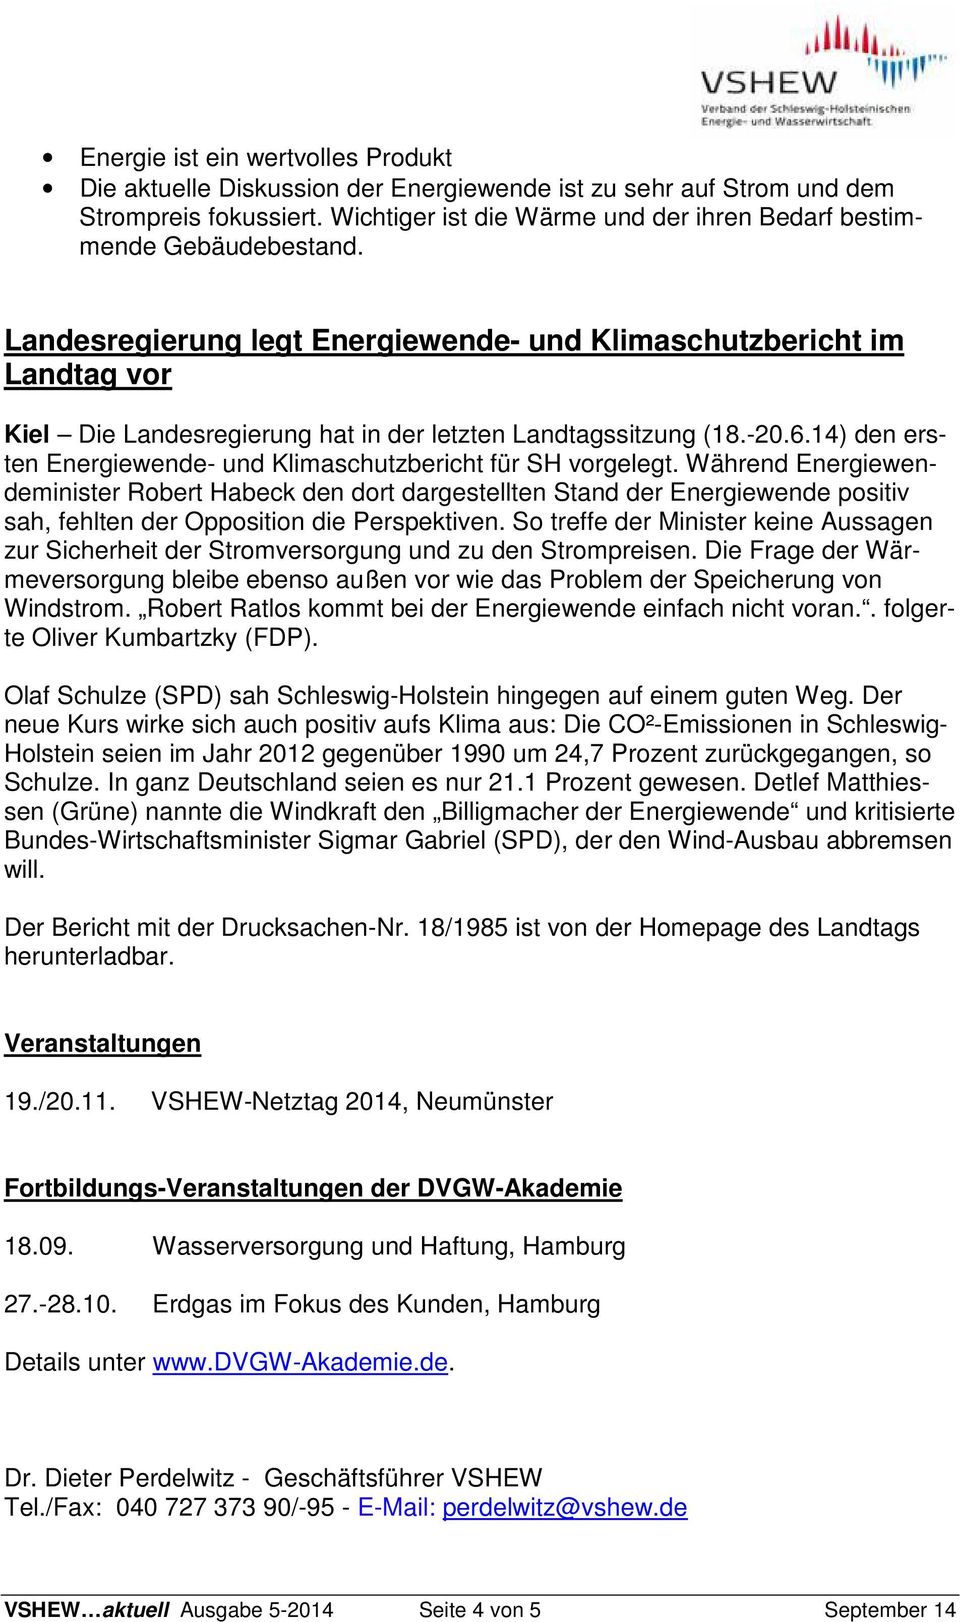 Landesregierung legt Energiewende- und Klimaschutzbericht im Landtag vor Kiel Die Landesregierung hat in der letzten Landtagssitzung (18.-20.6.